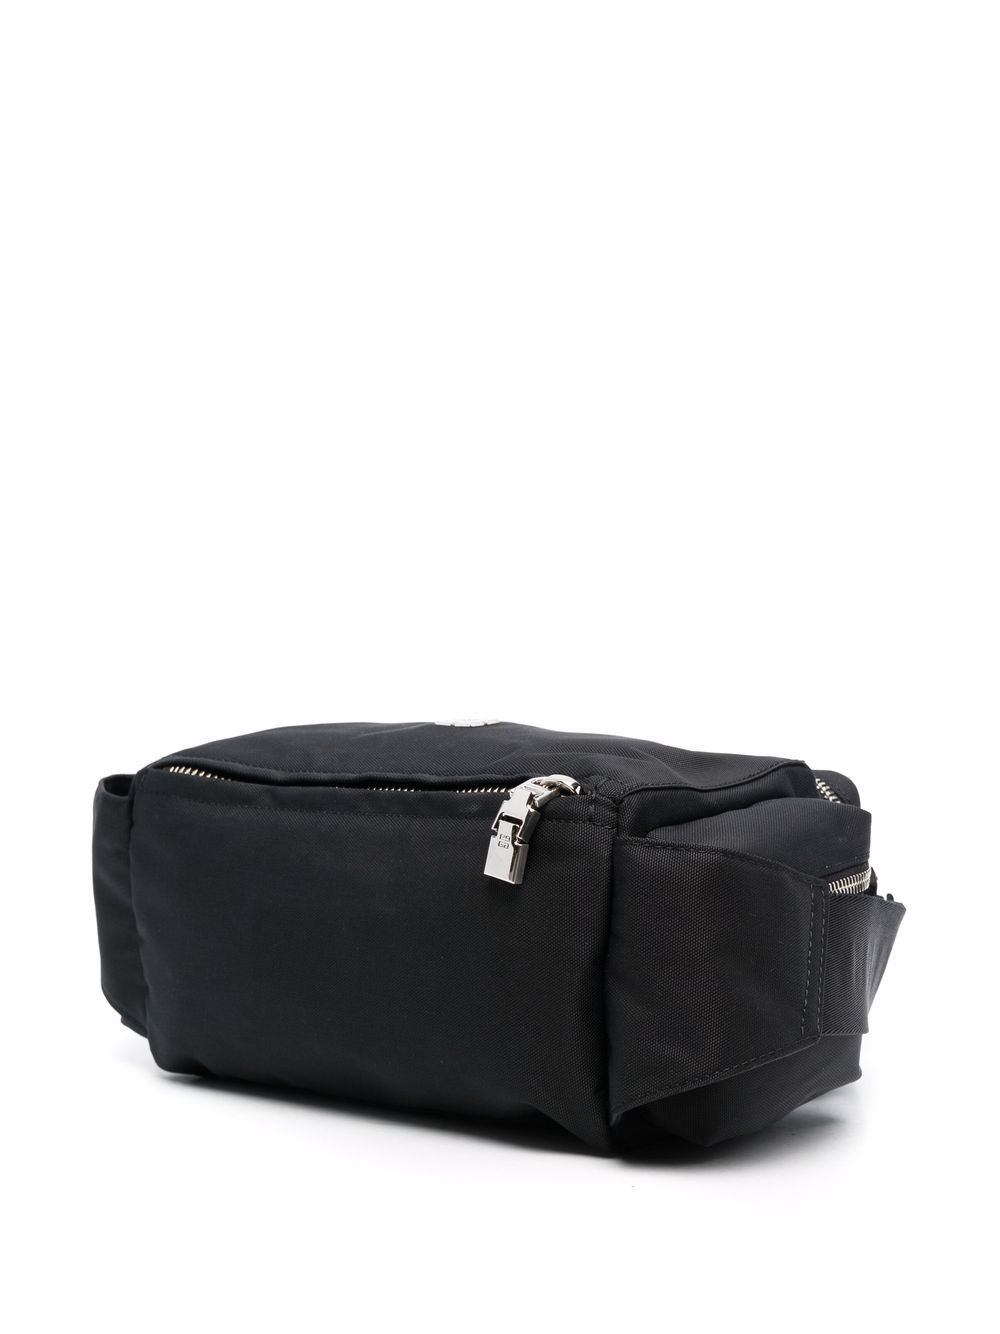 фото Givenchy сумка на плечо с несколькими отделениями